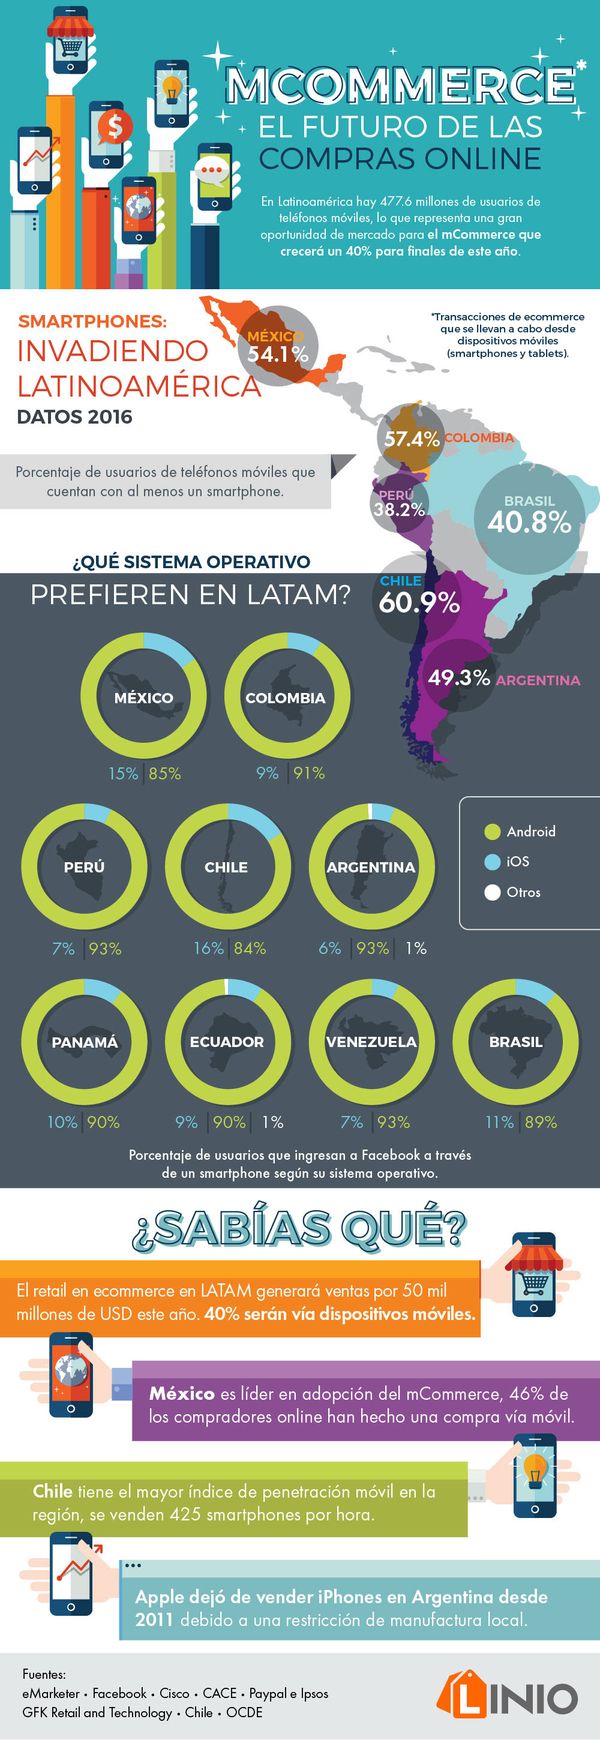 MSC Noticias Latinoamerica - linio Mexico Negocios Ultimas Noticias 